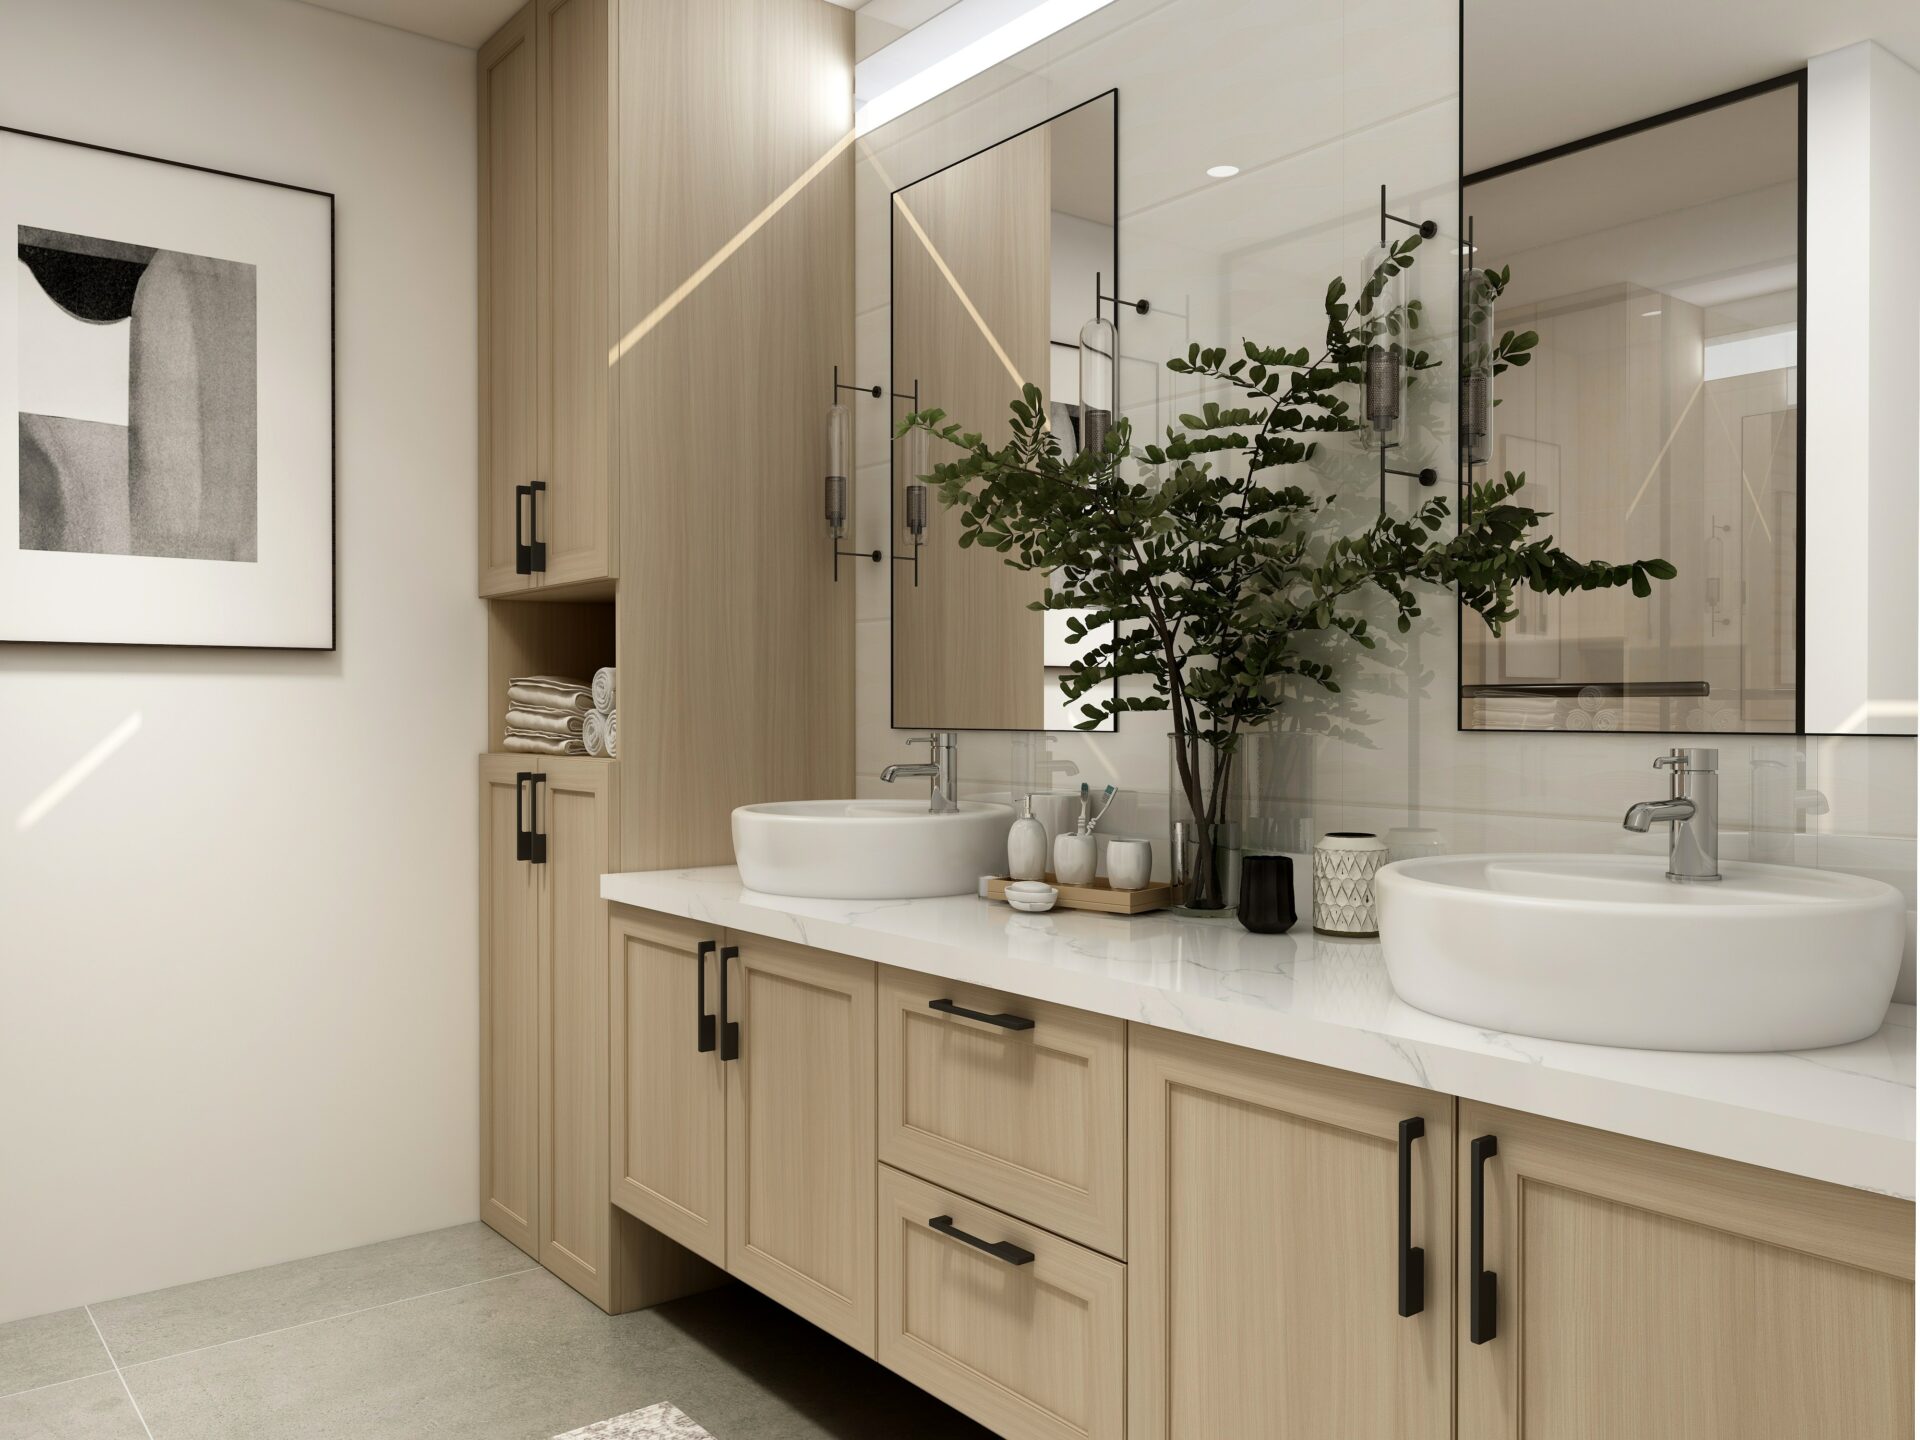 Harvey George revolutionising bathroom design for interior designers.